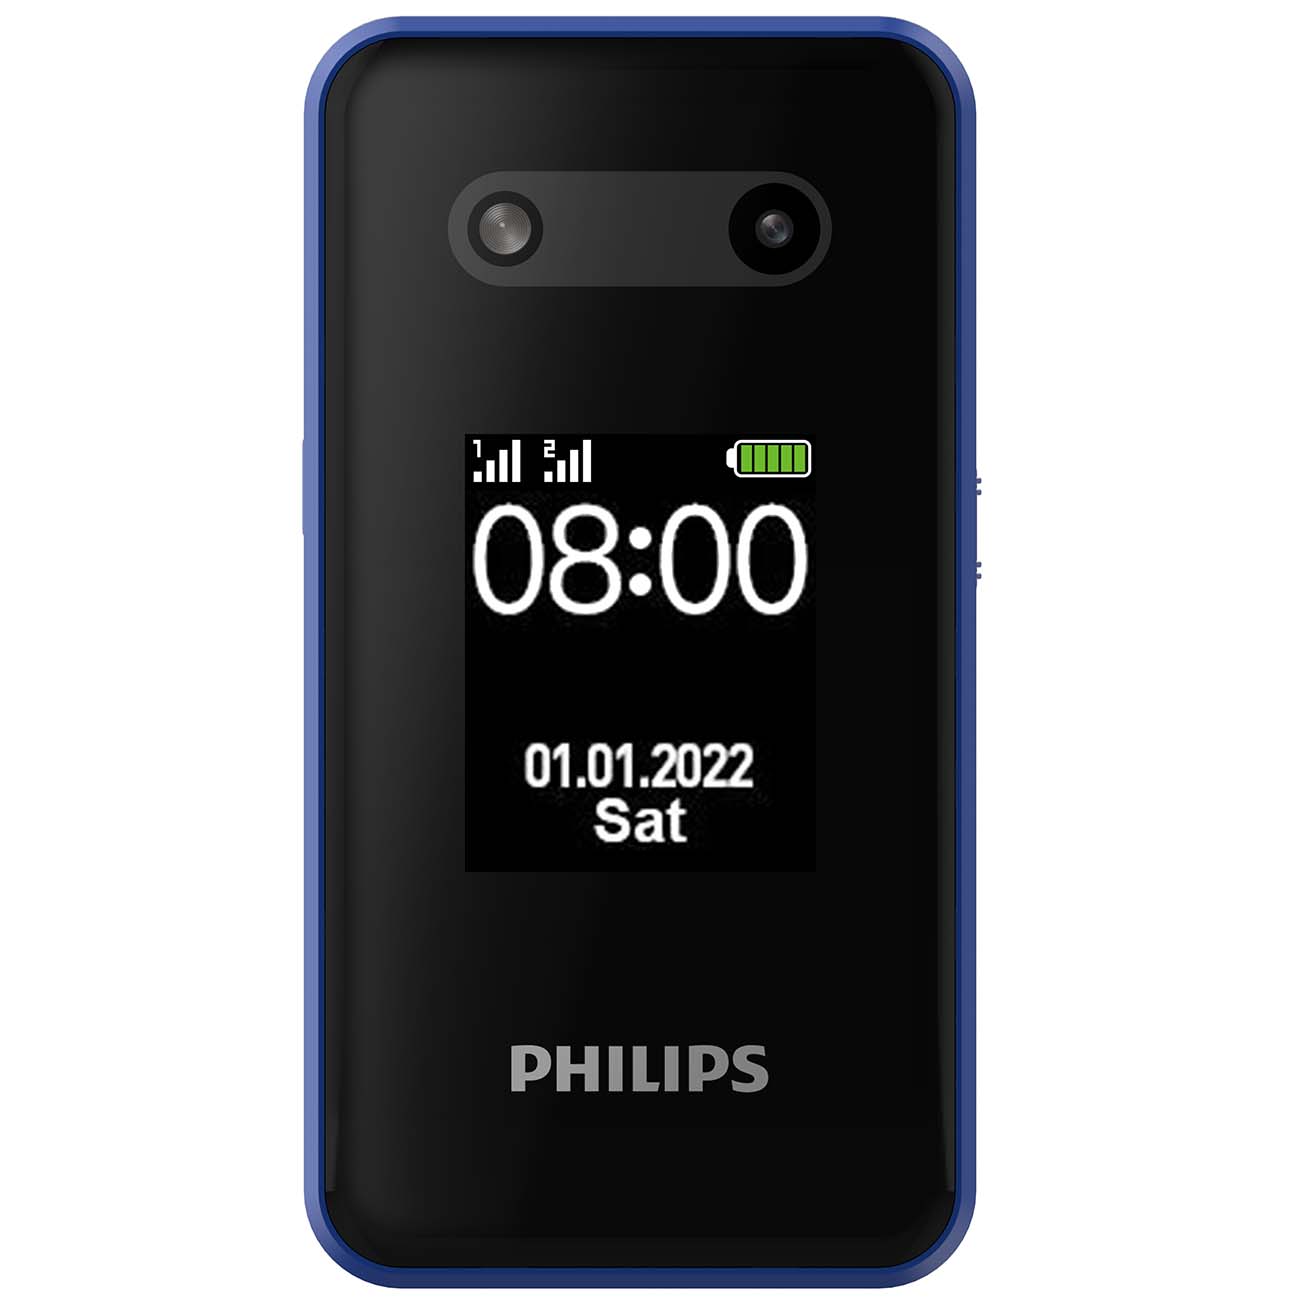 Philips xenium синий. Philips Xenium e2602. Сотовый телефон Philips Xenium e2602. Philips Xenium e2602 Blue. Сотовый телефон Philips Xenium e2602, синий.